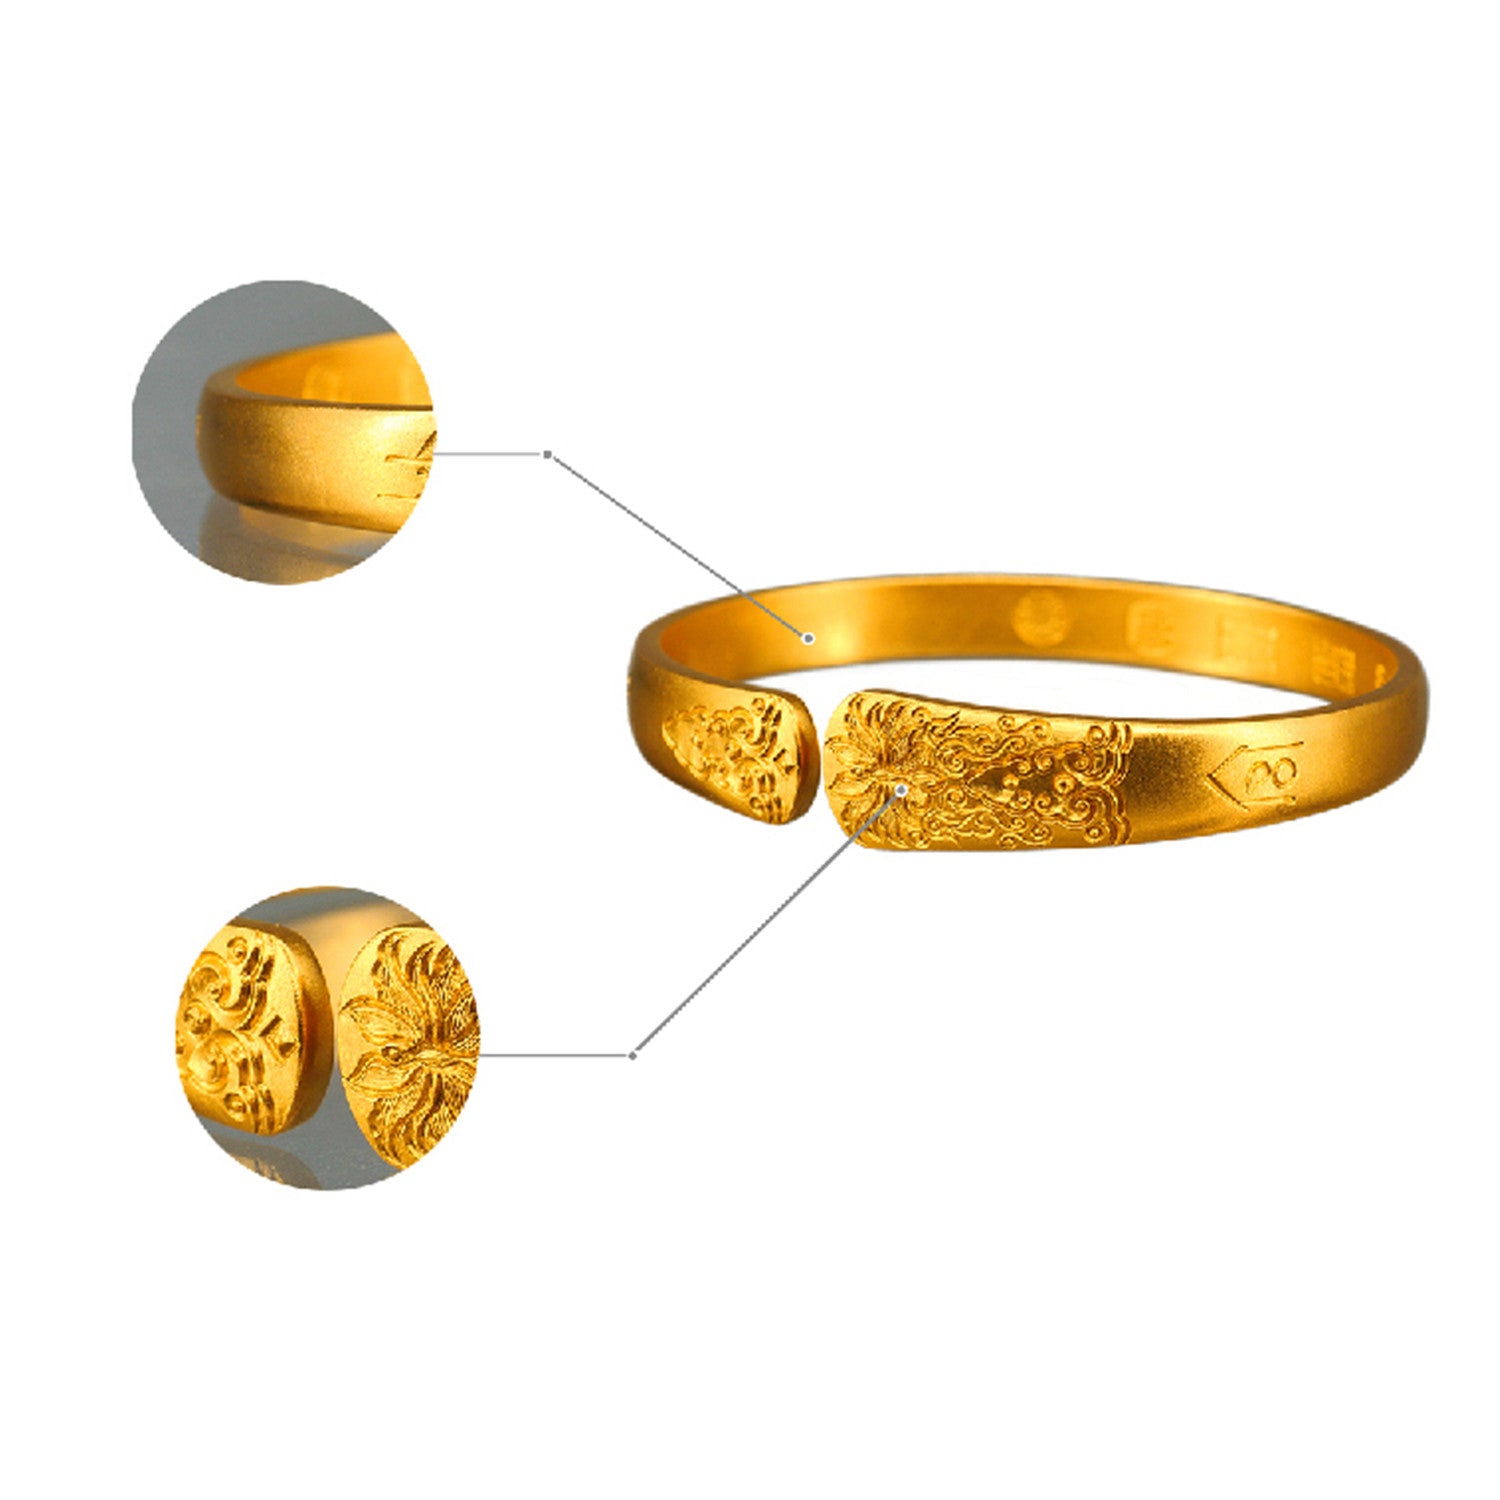 EVECOCO Full Gold Bracelet For Female,Flower Pattern,Hand Forging Elegant,55g